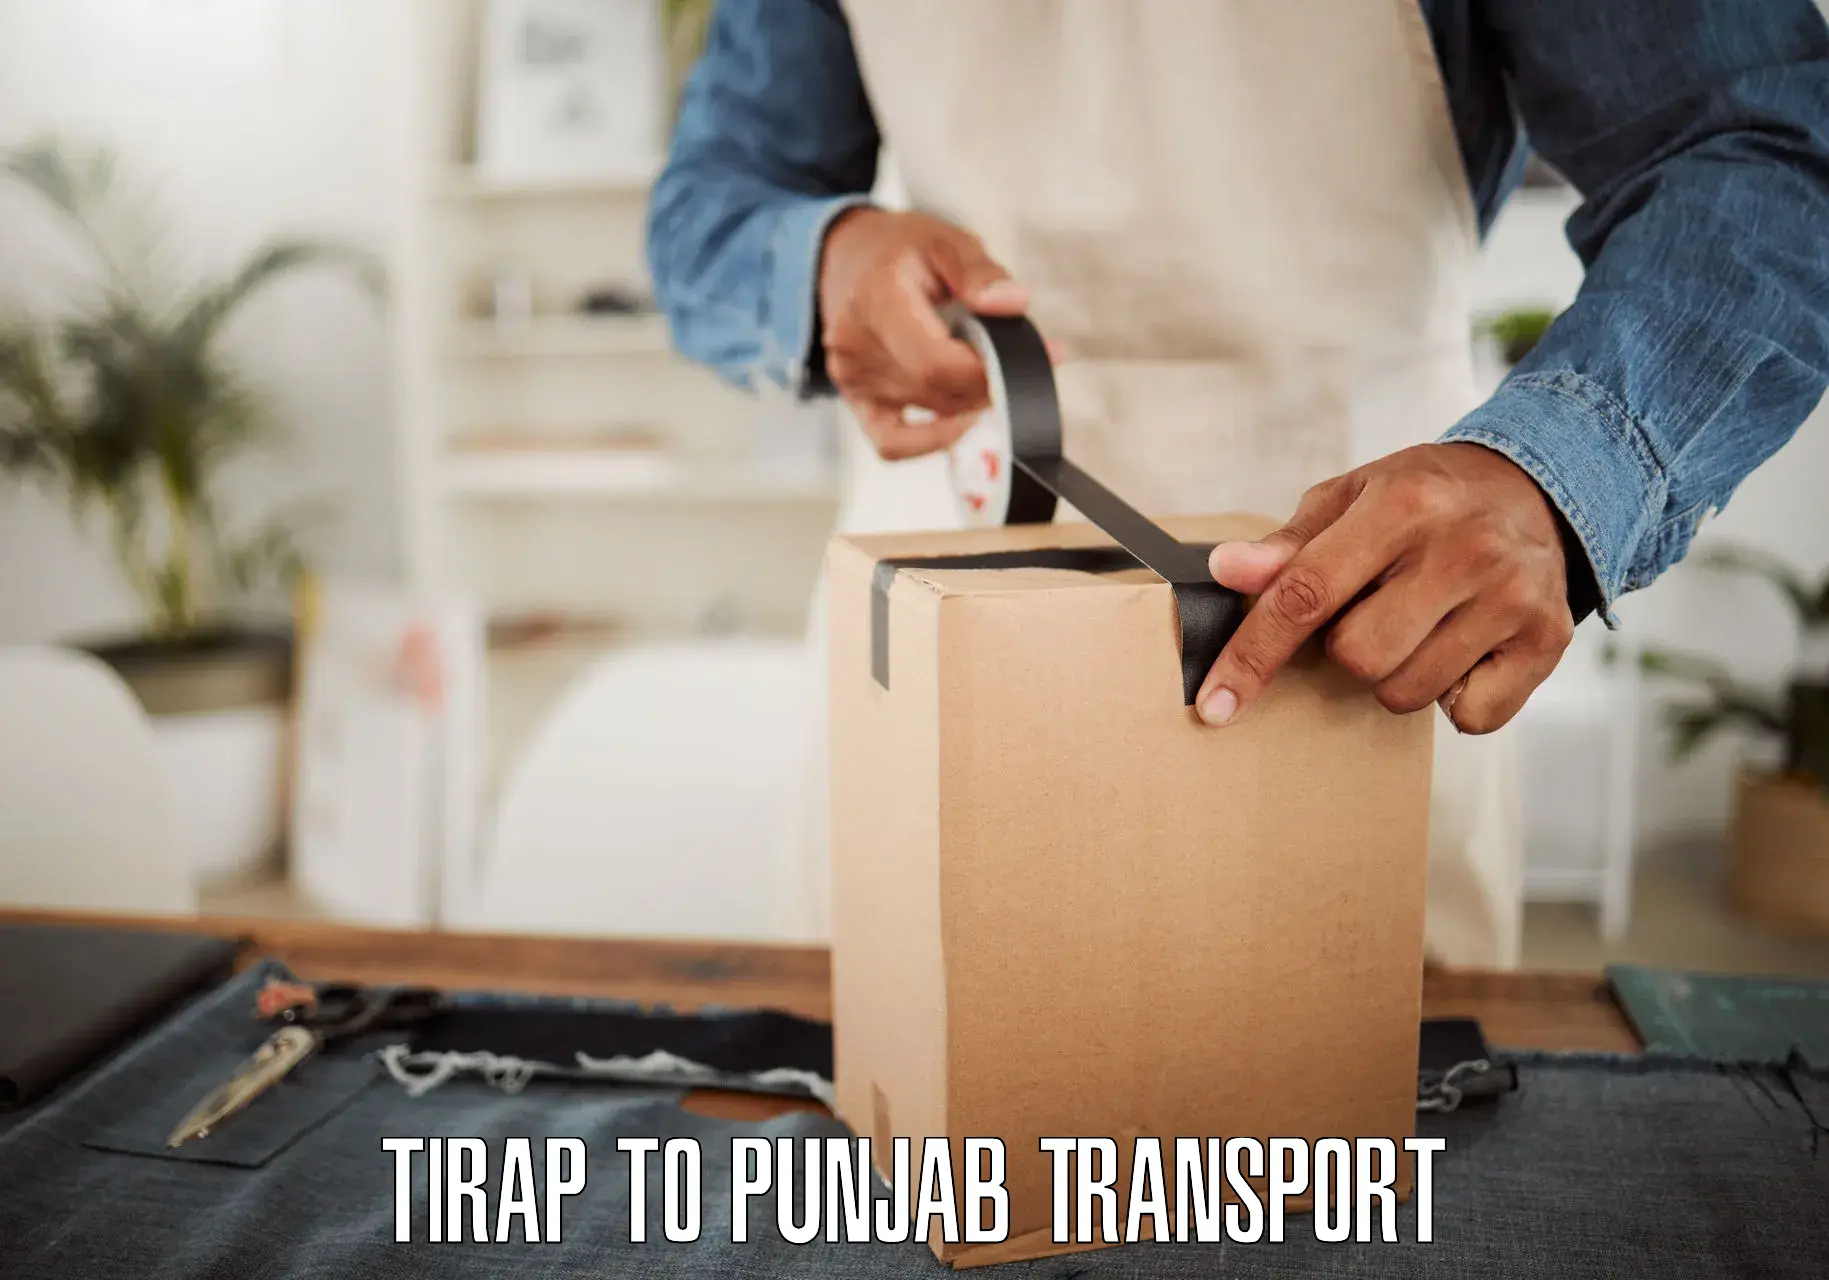 Interstate goods transport Tirap to Punjab